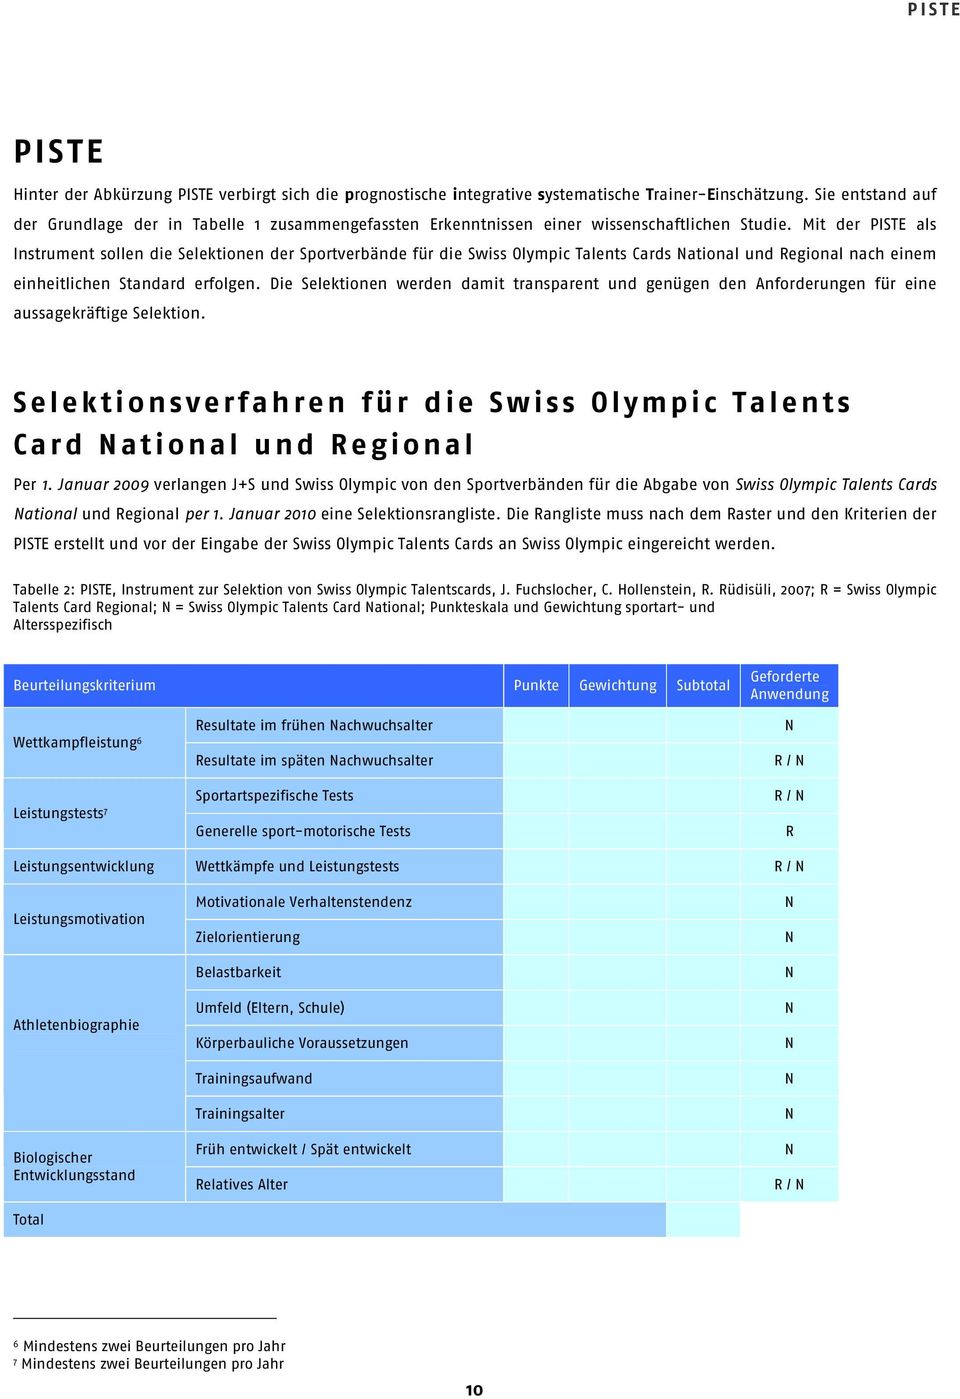 Mit der PISTE als Instrument sollen die Selektionen der Sportverbände für die Swiss Olympic Talents Cards National und Regional nach einem einheitlichen Standard erfolgen.